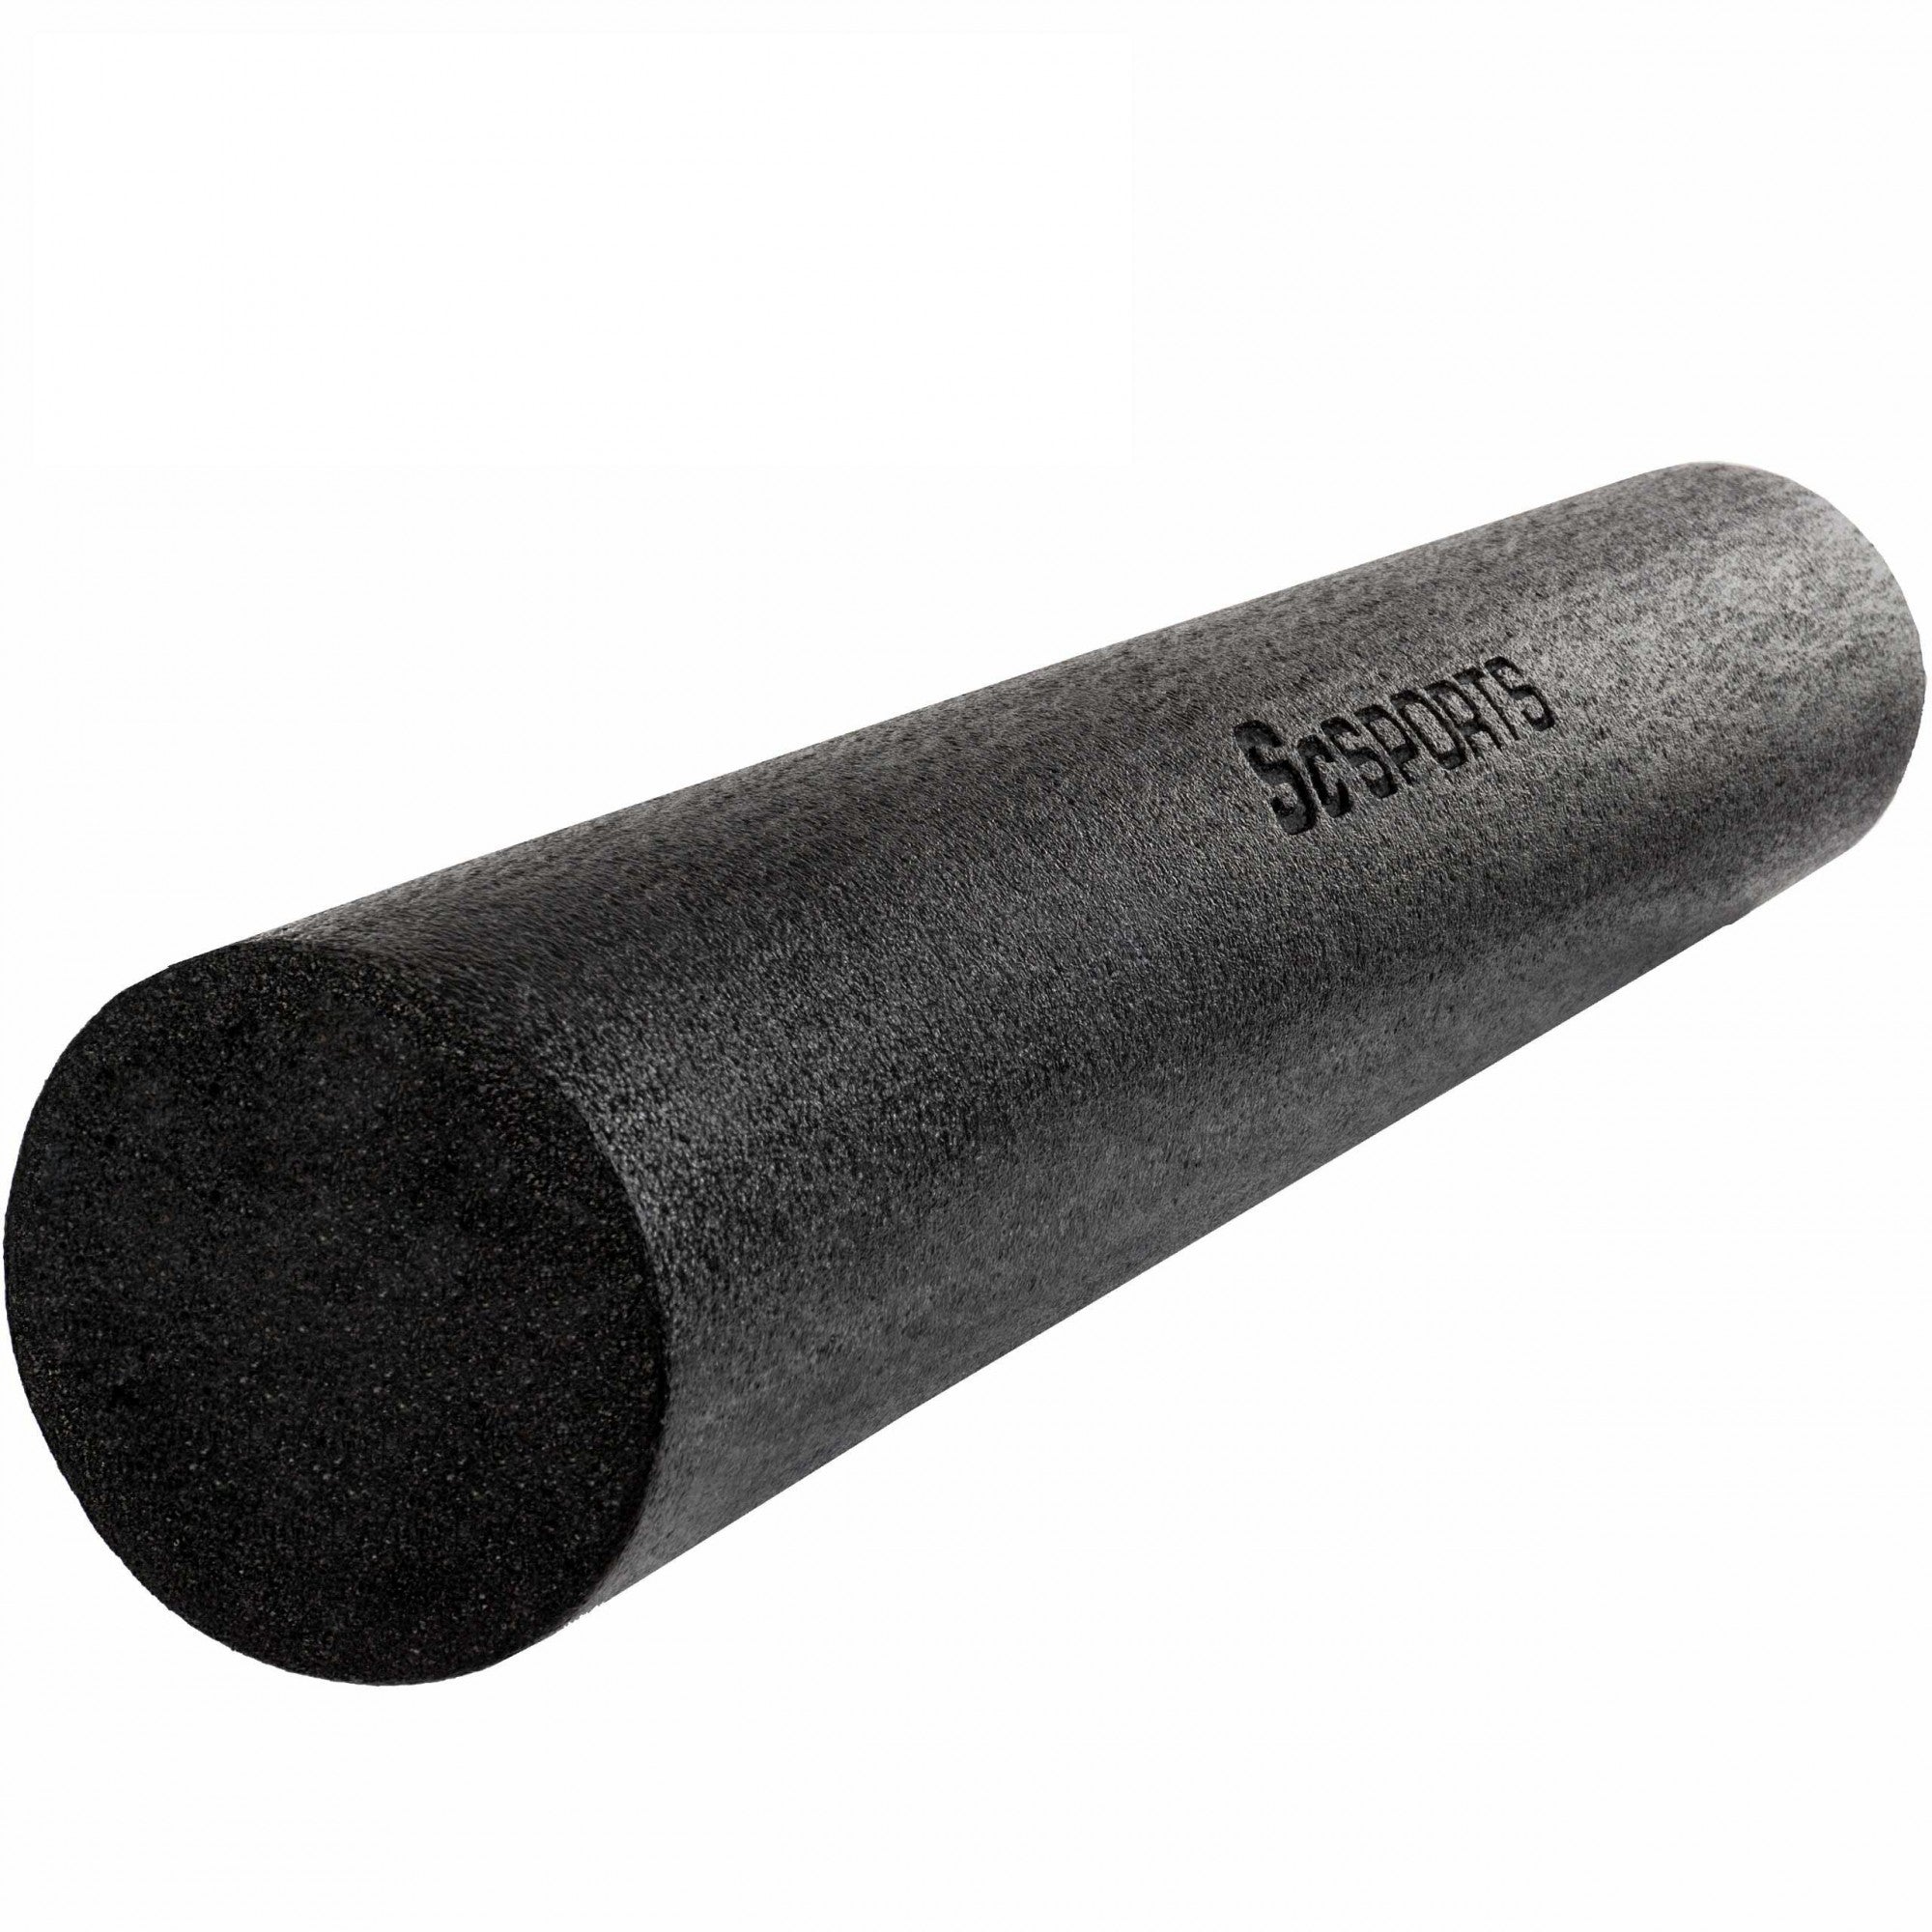 Billede af Foam roller til yoga, pilates, 90 x 15 cm, skum, sort